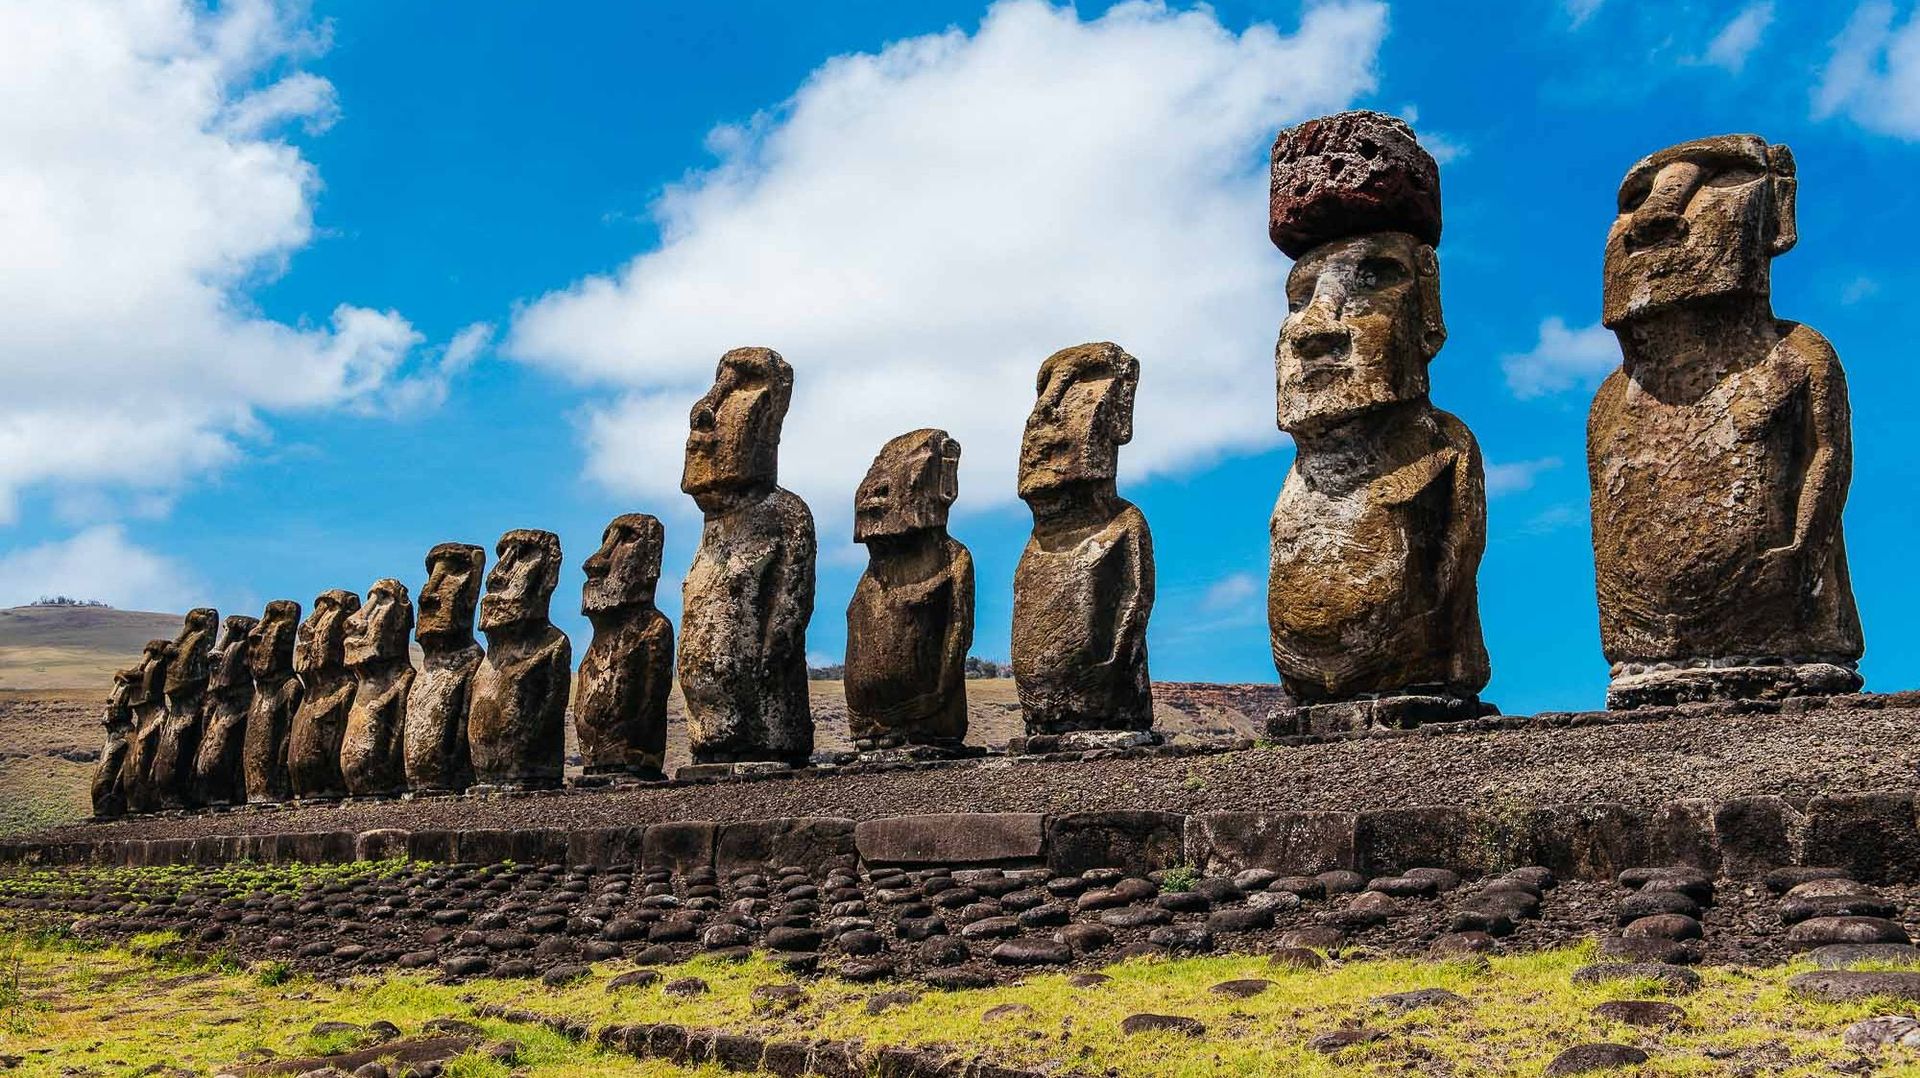 Depuis peu, Rapa Nui profite aussi de la manne touristique et dispose des revenus de son parc national 